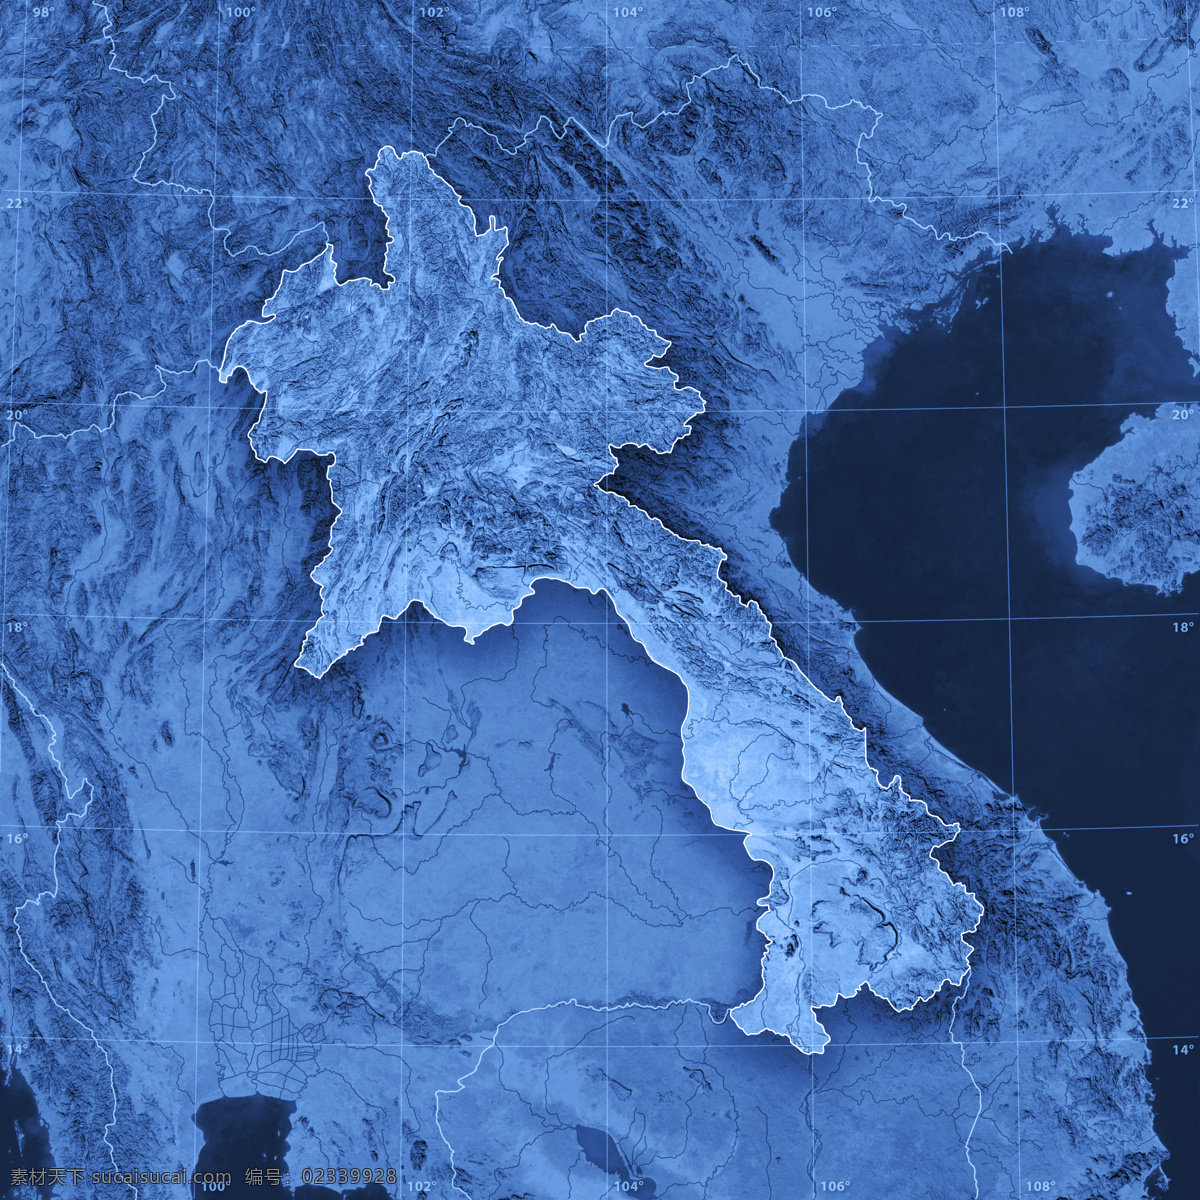 老挝 地图 老挝地图 蓝色地图 地图模板 经线 纬线 经度 纬度 地图图片 生活百科